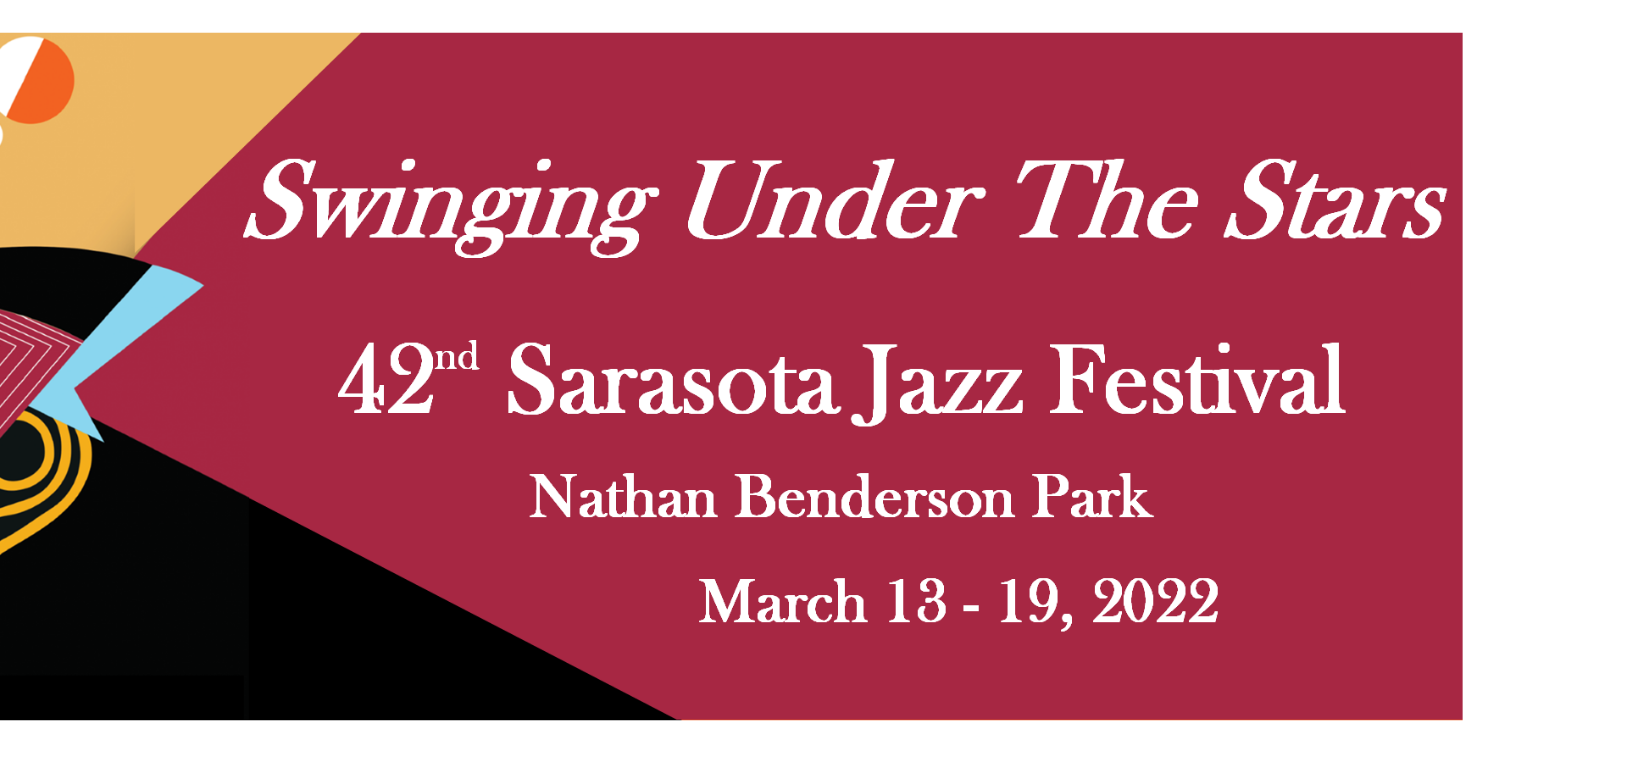 Sarasota Jazz Festival University Town Center Sarasota